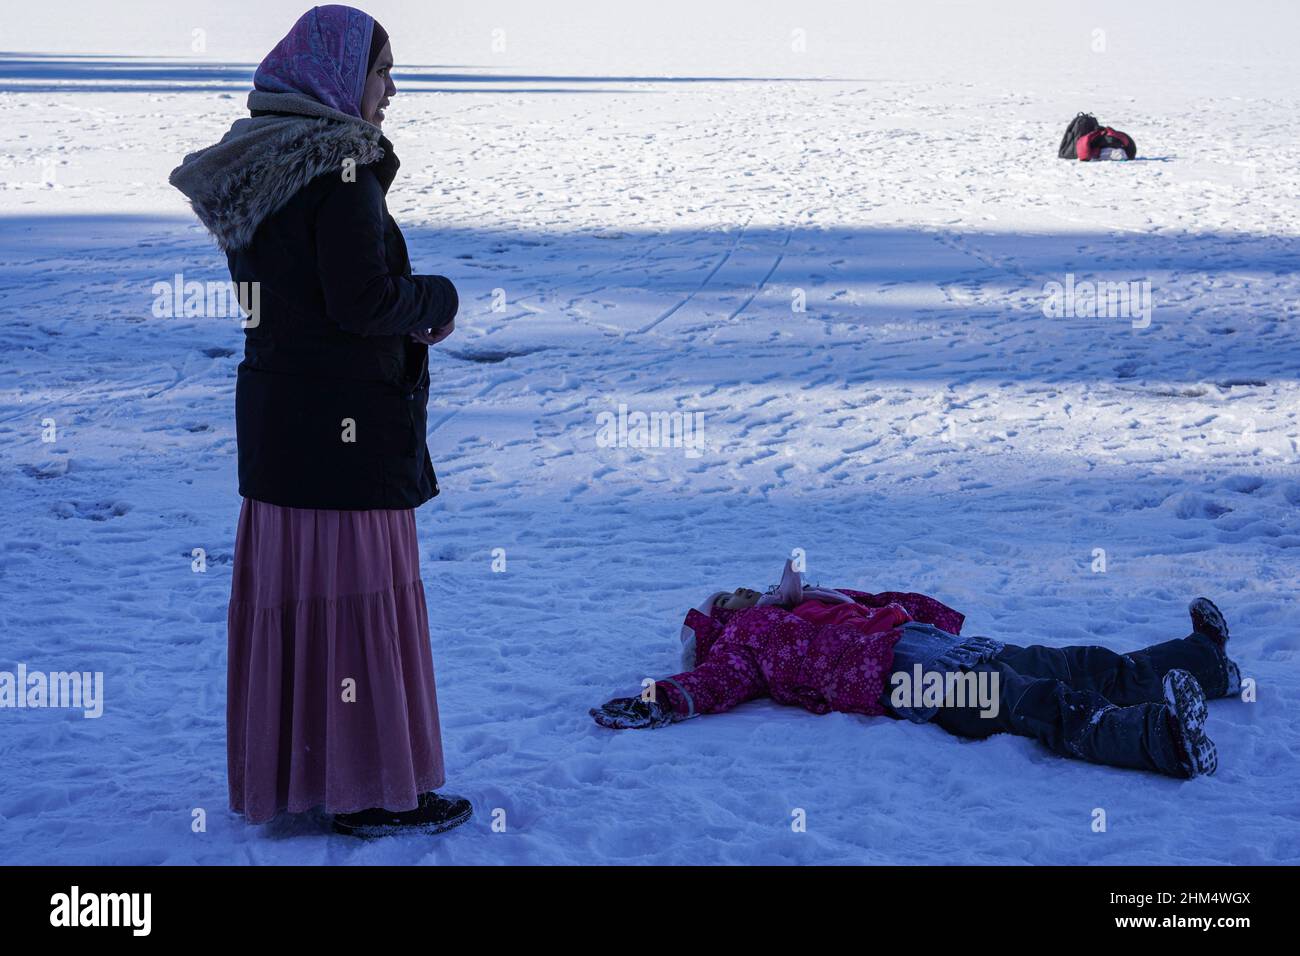 Turista asiatico femminile con foulard è in piedi sulla superficie ghiacciata di Eibsee, Zugspitze.. Il bambino si è posato a terra nella neve. Foto Stock